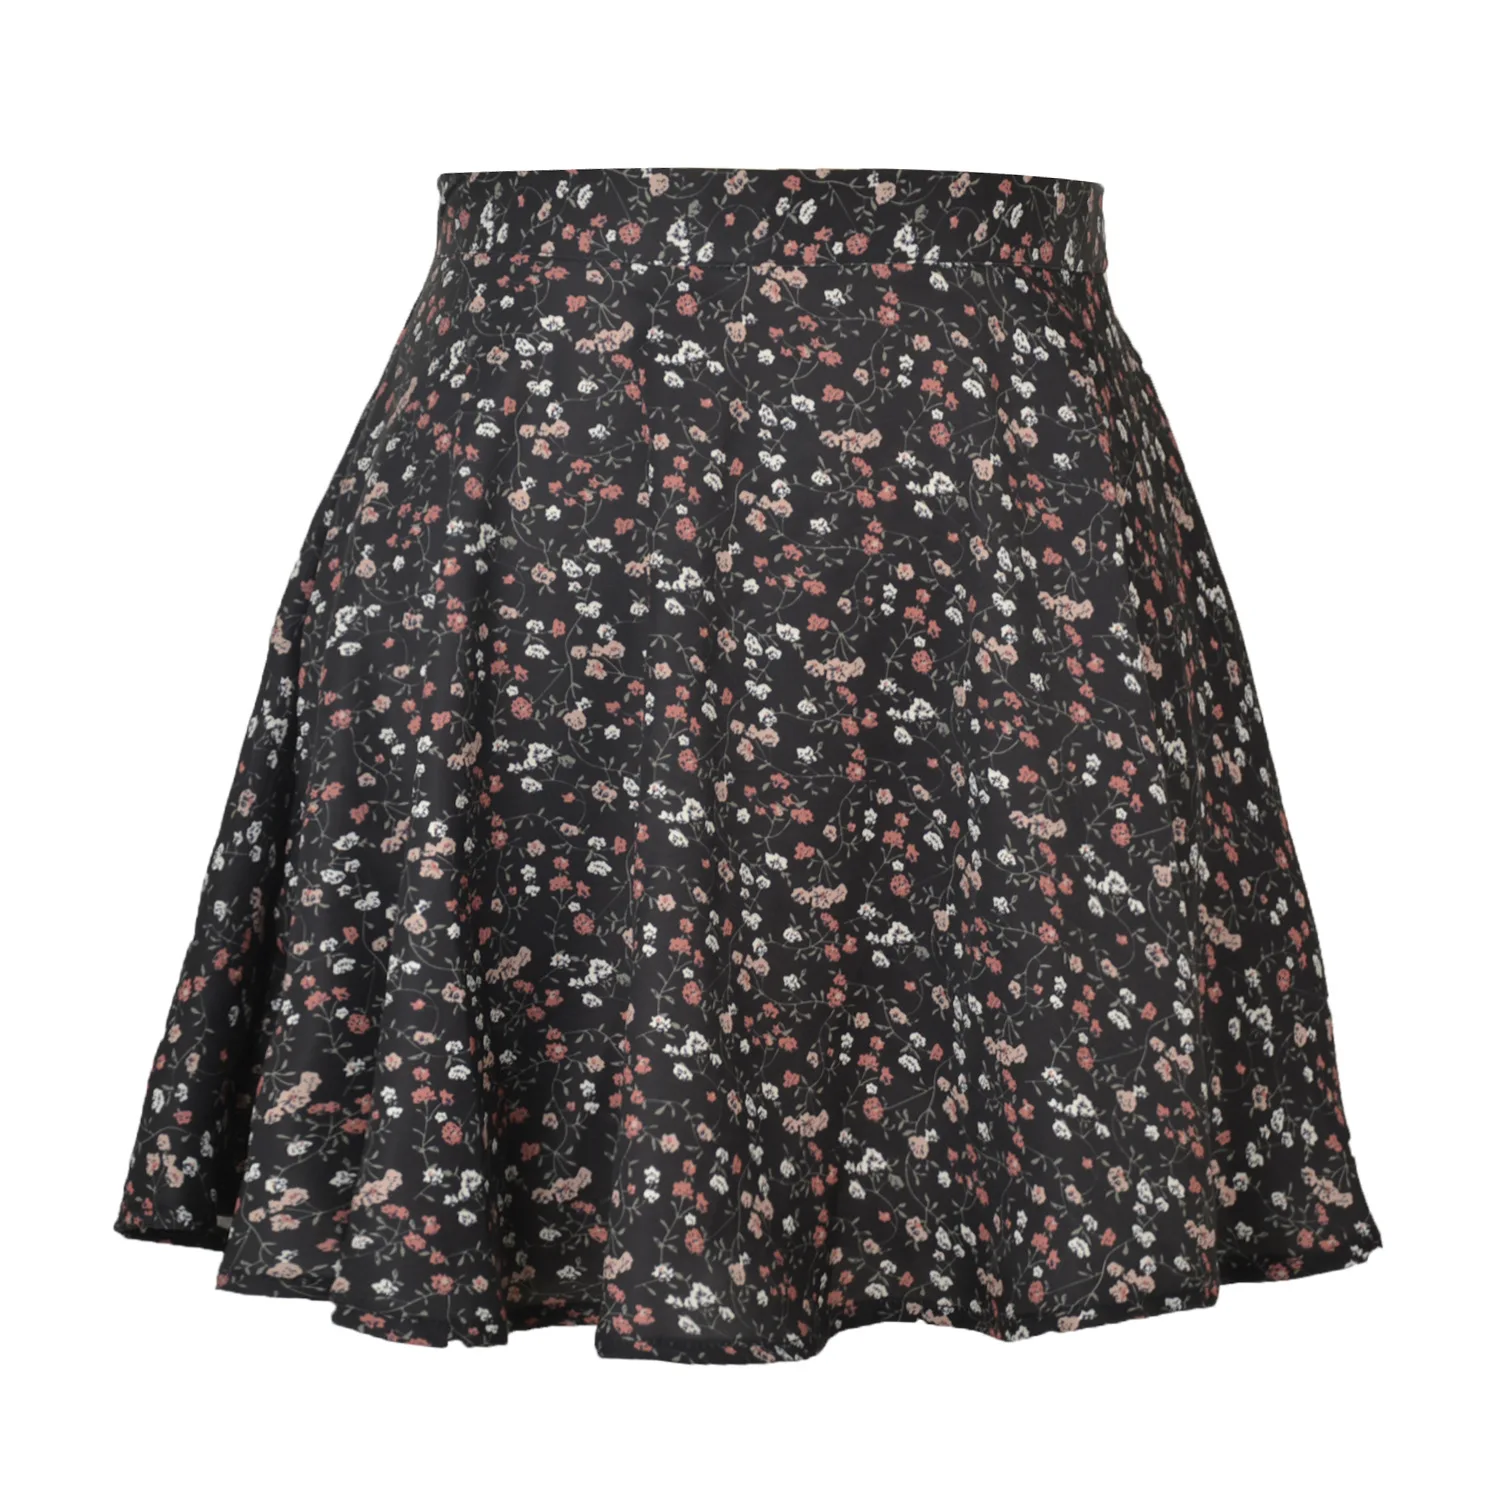 New style women's European and American floral skirt high-waist umbrella skirt invisible zipper chiffon print short skirt women tartan skirt